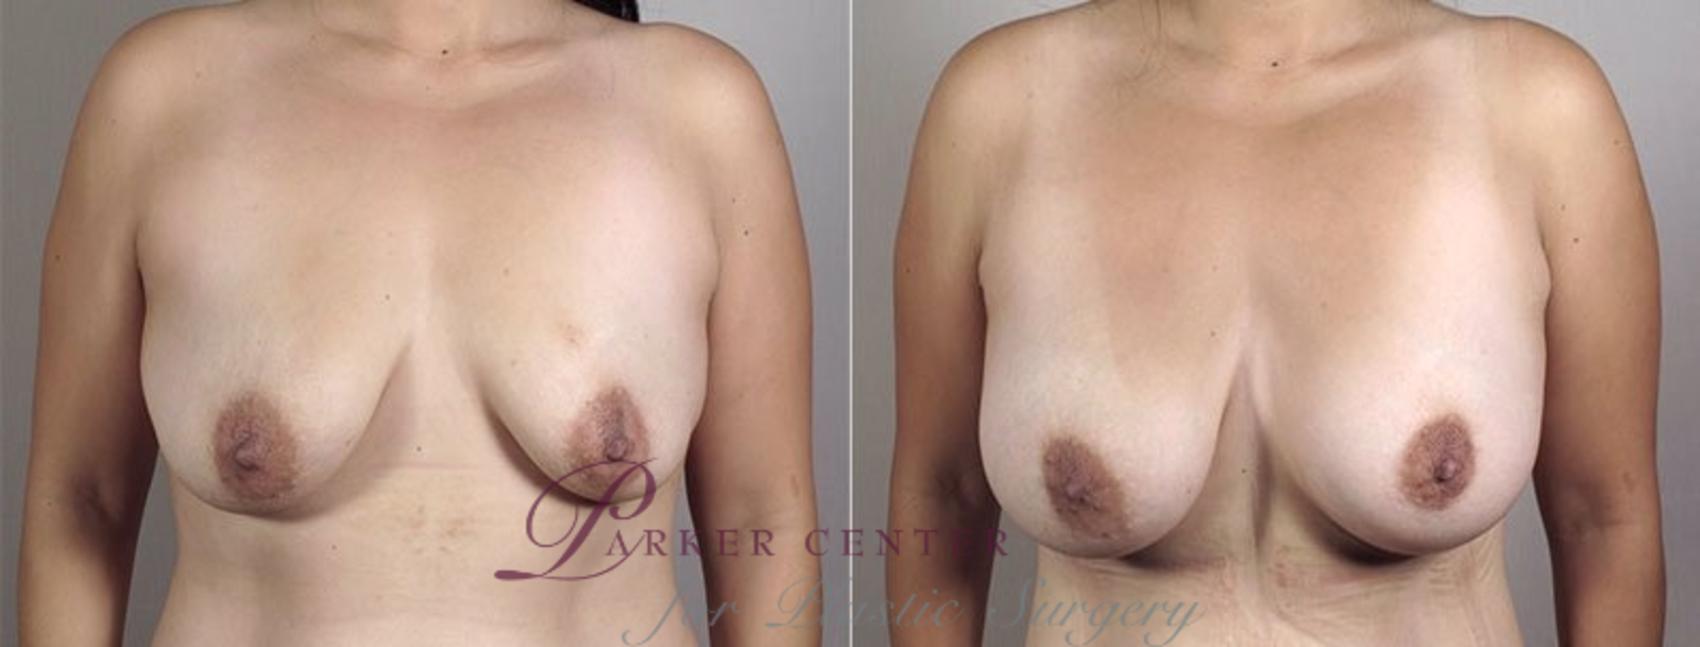 Liposuction Case 1184 Before & After View 2 | Paramus, NJ | Parker Center for Plastic Surgery